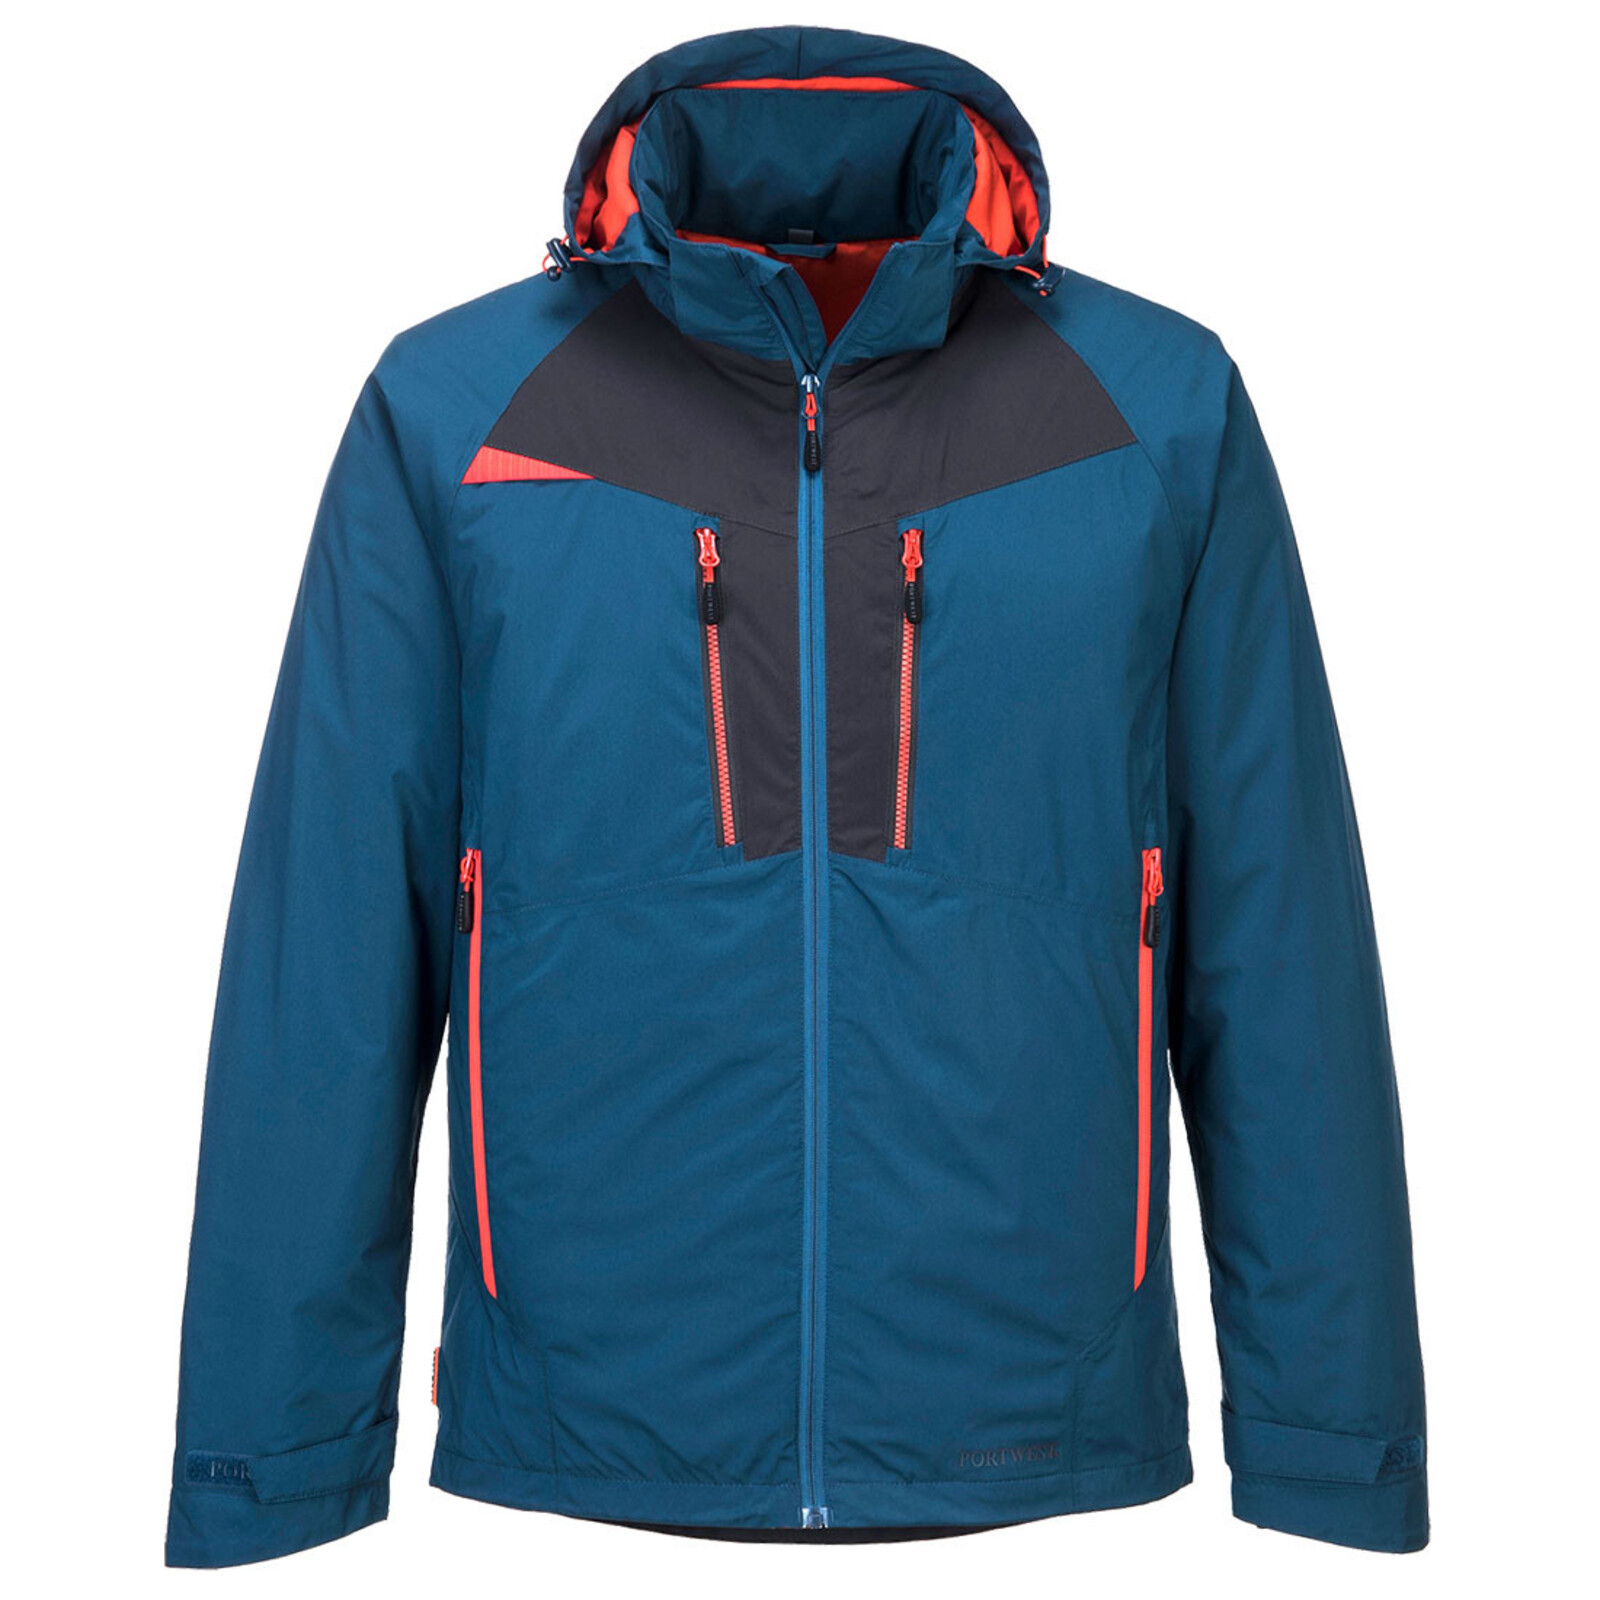 Pánska zimná bunda Portwest DX460 - DX4 - veľkosť: S, farba: modrá/oranžová